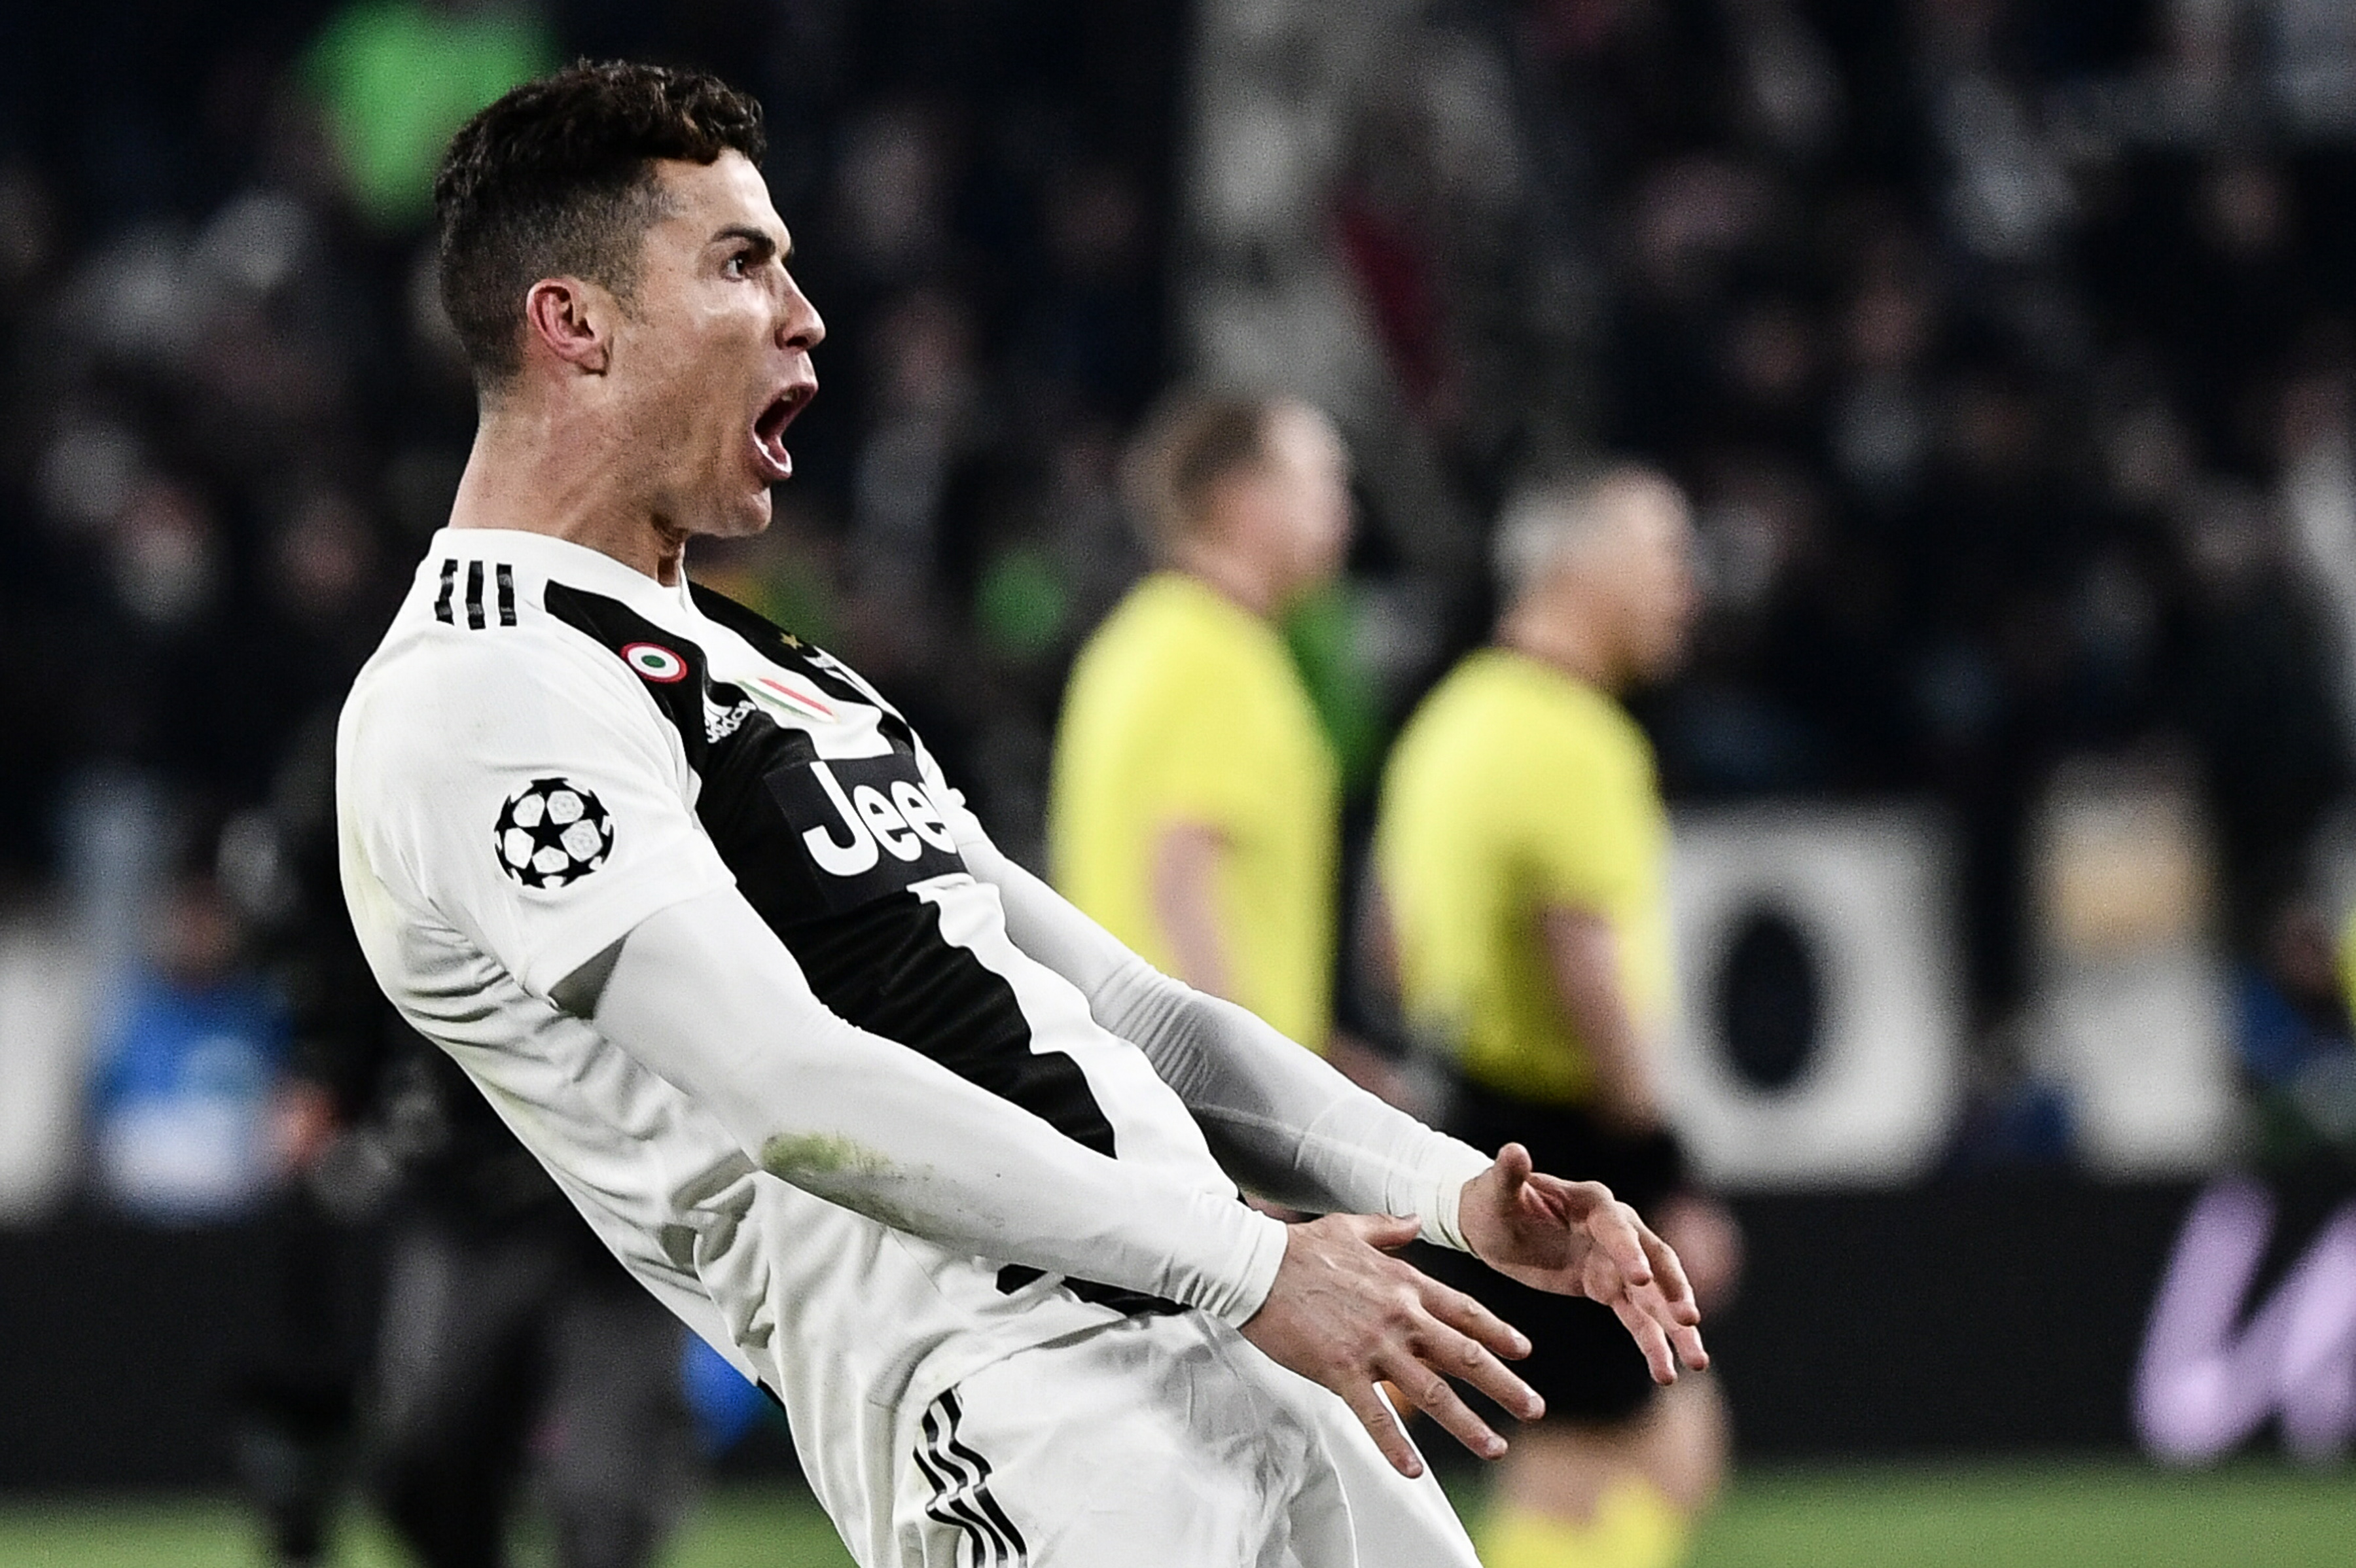 Negatív lett Ronaldo tesztje, jöhet Budapestre játszani a Fradi ellen